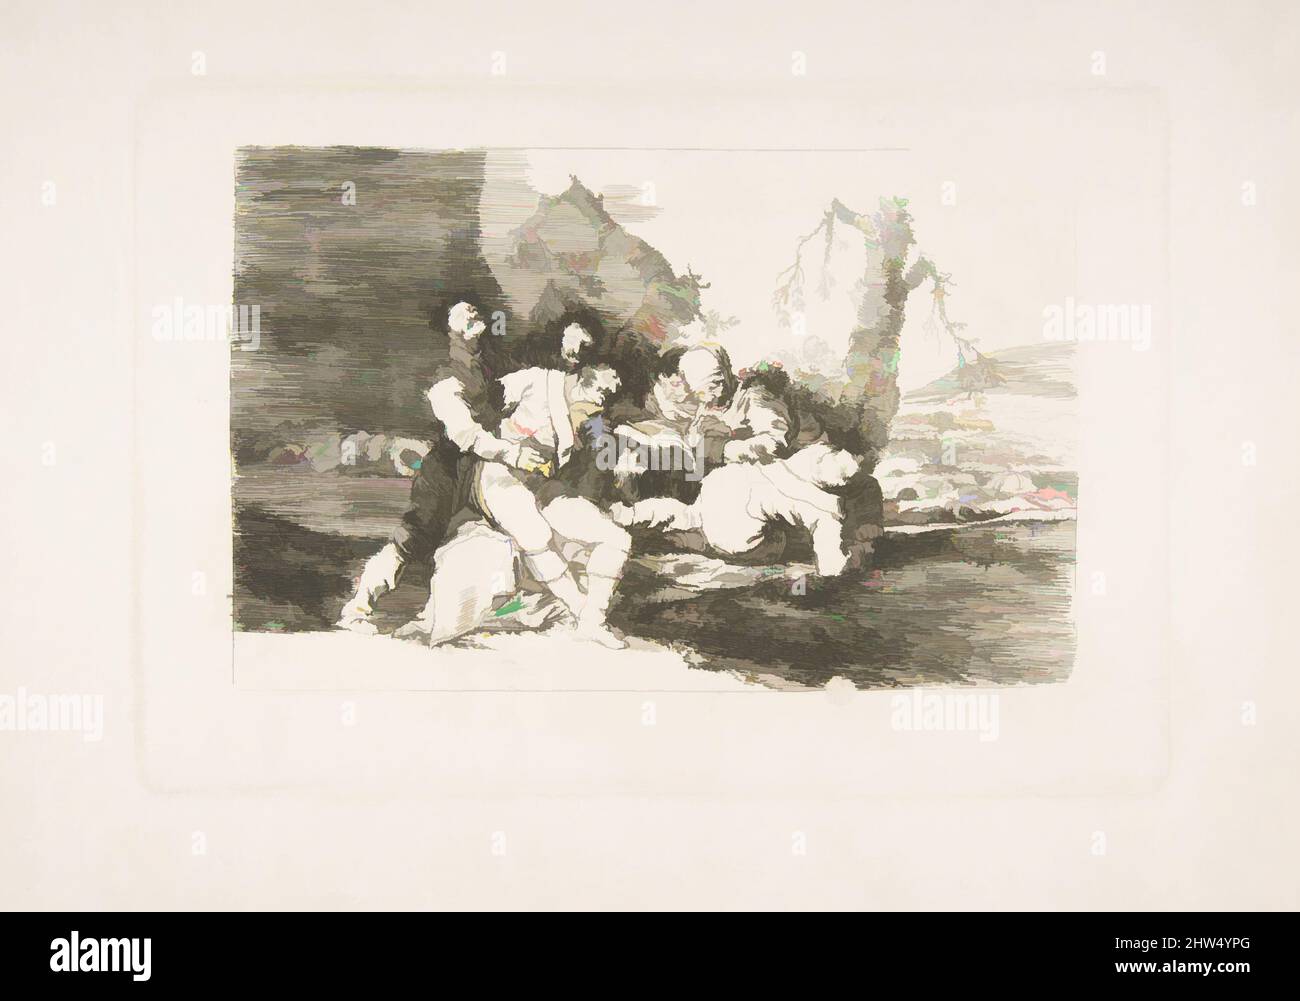 Art inspiré par la planche 20 de « The Disasters of War » (Los Desastres de la Guerra) : « faites-les bien, et passez au suivant. » (Curarlos y á otra.), 1810, Etching, lavis, burin, Et burnisher, plaque : 6 5/16 × 9 1/4 in. (16 × 23,5 cm), Prints, Goya (Francisco de Goya y Lucientes) (espagnol, oeuvres classiques modernisées par Artotop avec une touche de modernité. Formes, couleur et valeur, impact visuel accrocheur sur l'art émotions par la liberté d'œuvres d'art d'une manière contemporaine. Un message intemporel qui cherche une nouvelle direction créative. Artistes qui se tournent vers le support numérique et créent le NFT Artotop Banque D'Images